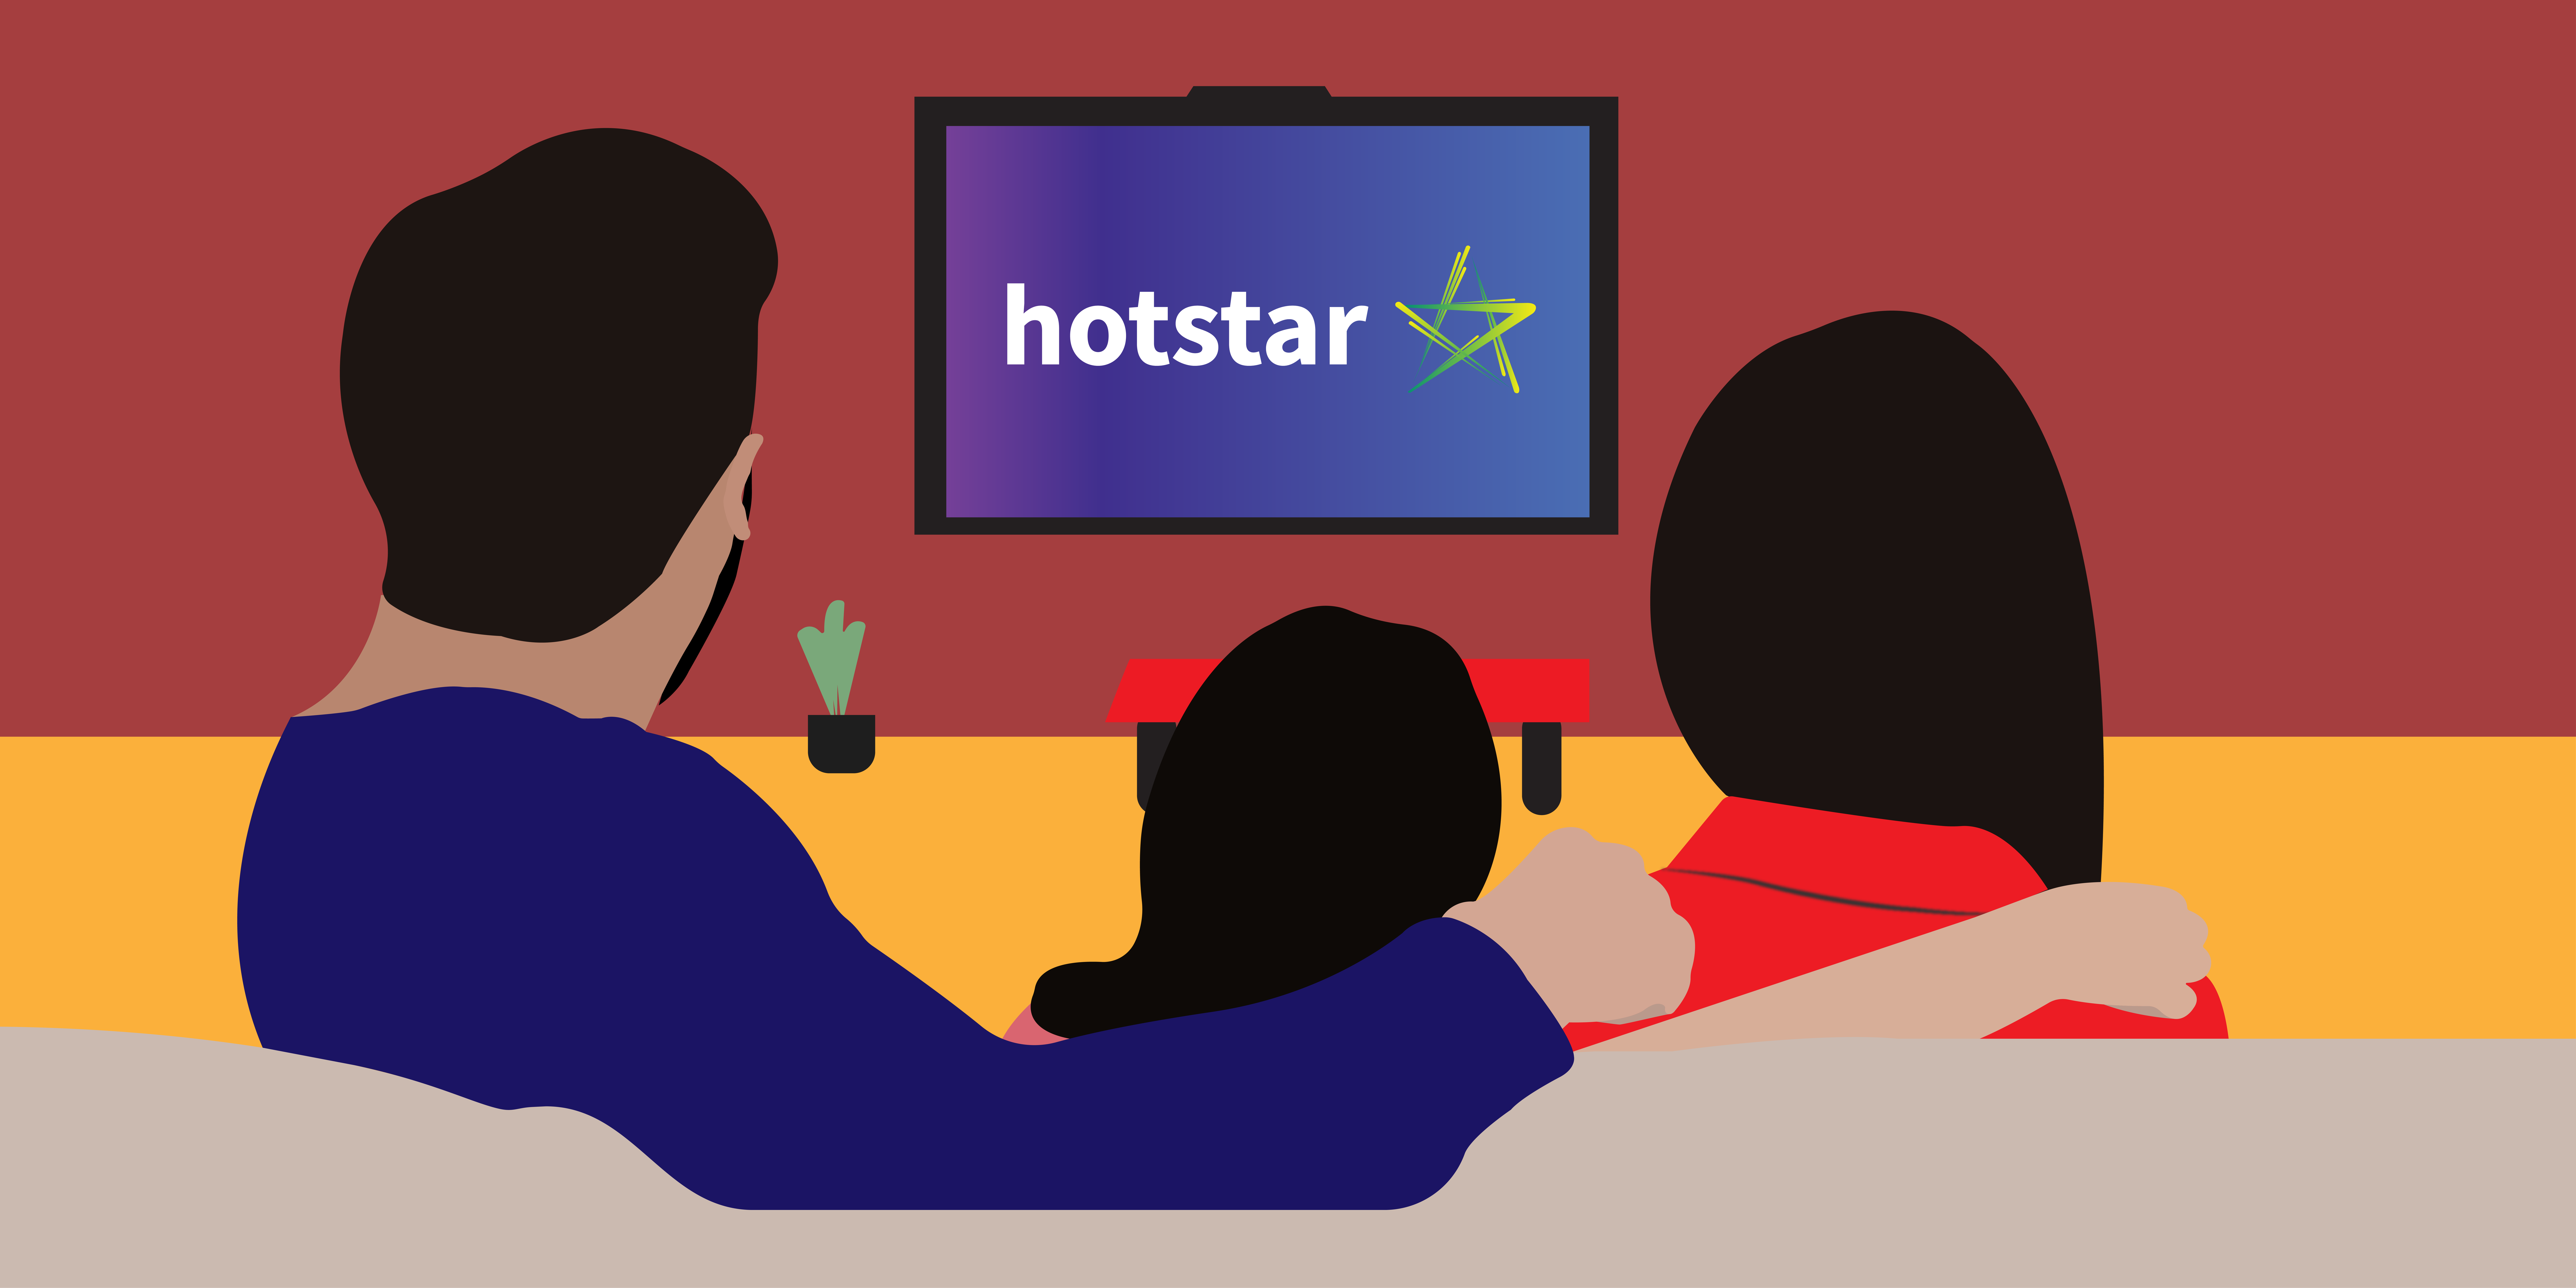 hotstar logo illustration